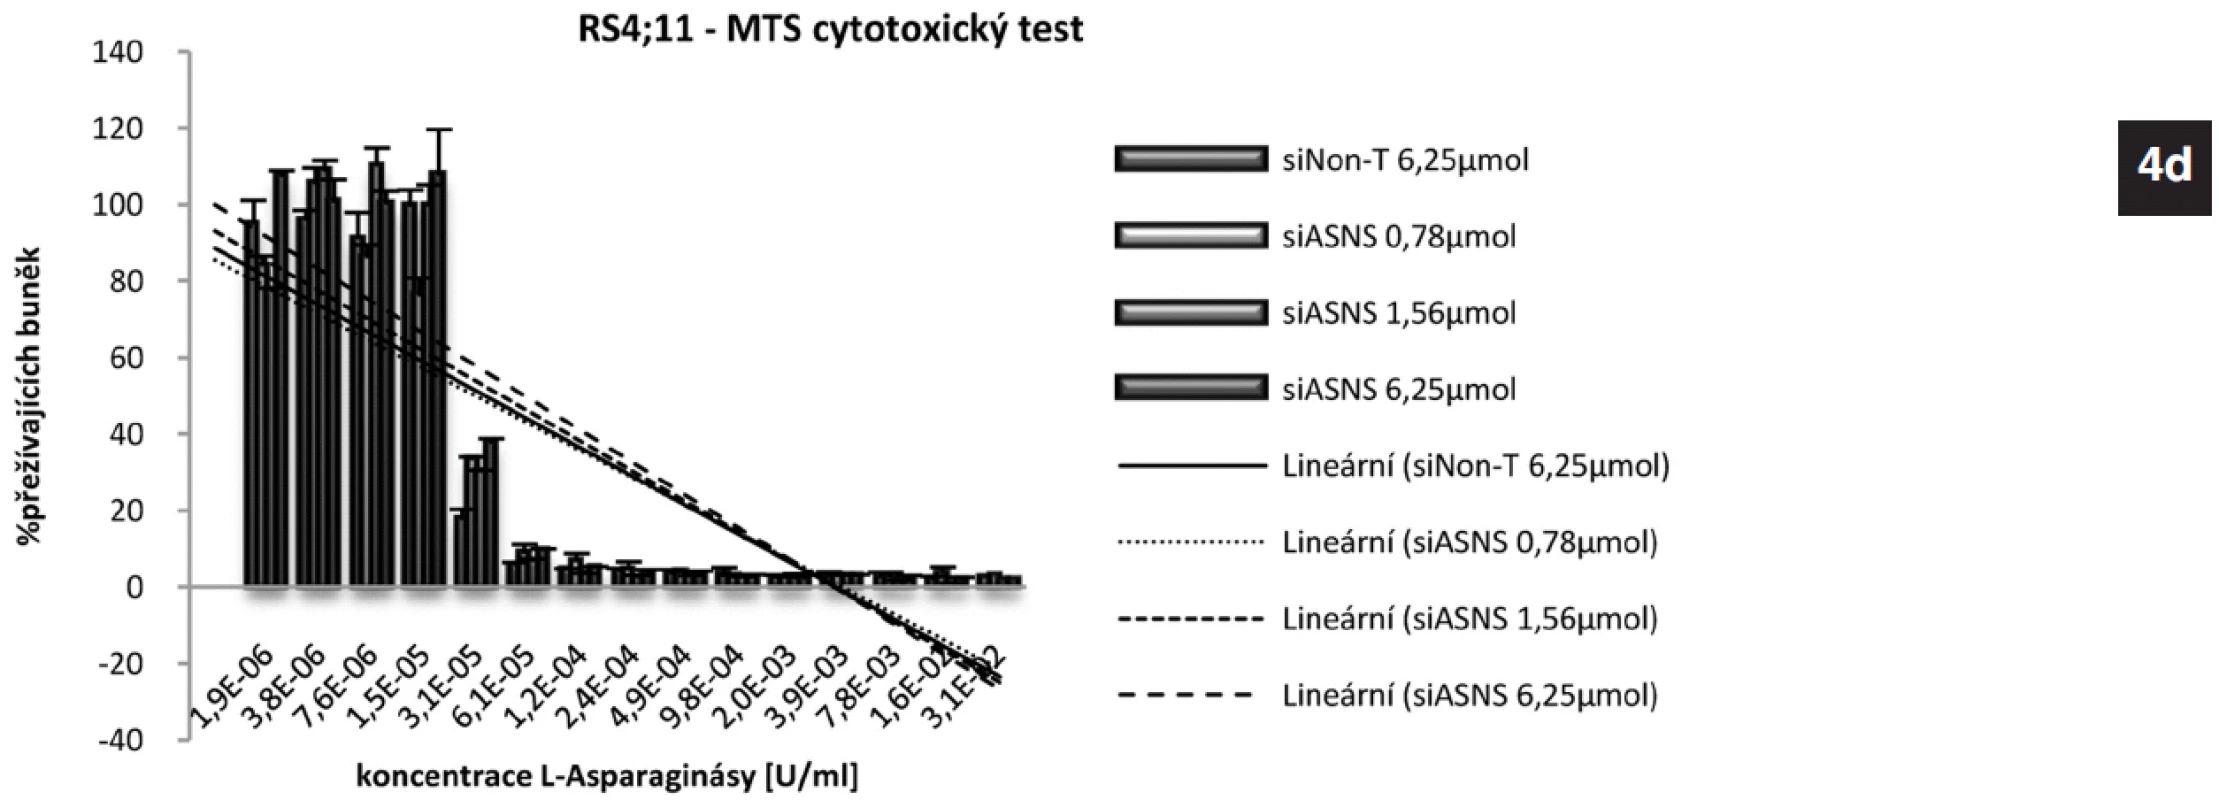 4a. Exprese genu pro ASNS u linie REH po gradientovém umlčení tohoto genu metodou RNA-interference po 24 hodinách.
4b. Výsledek MTS cytotoxického testu REH buněk s gradientově umlčeným genem pro ASNS.
4c. Exprese genu pro ASNS u linie RS4;11 po gradientovém umlčení tohoto genu metodou RNA-interference po 24 hodinách.
4d. Výsledek MTS cytotoxického testu RS4;11 buněk s gradientově umlčeným genem pro ASNS.